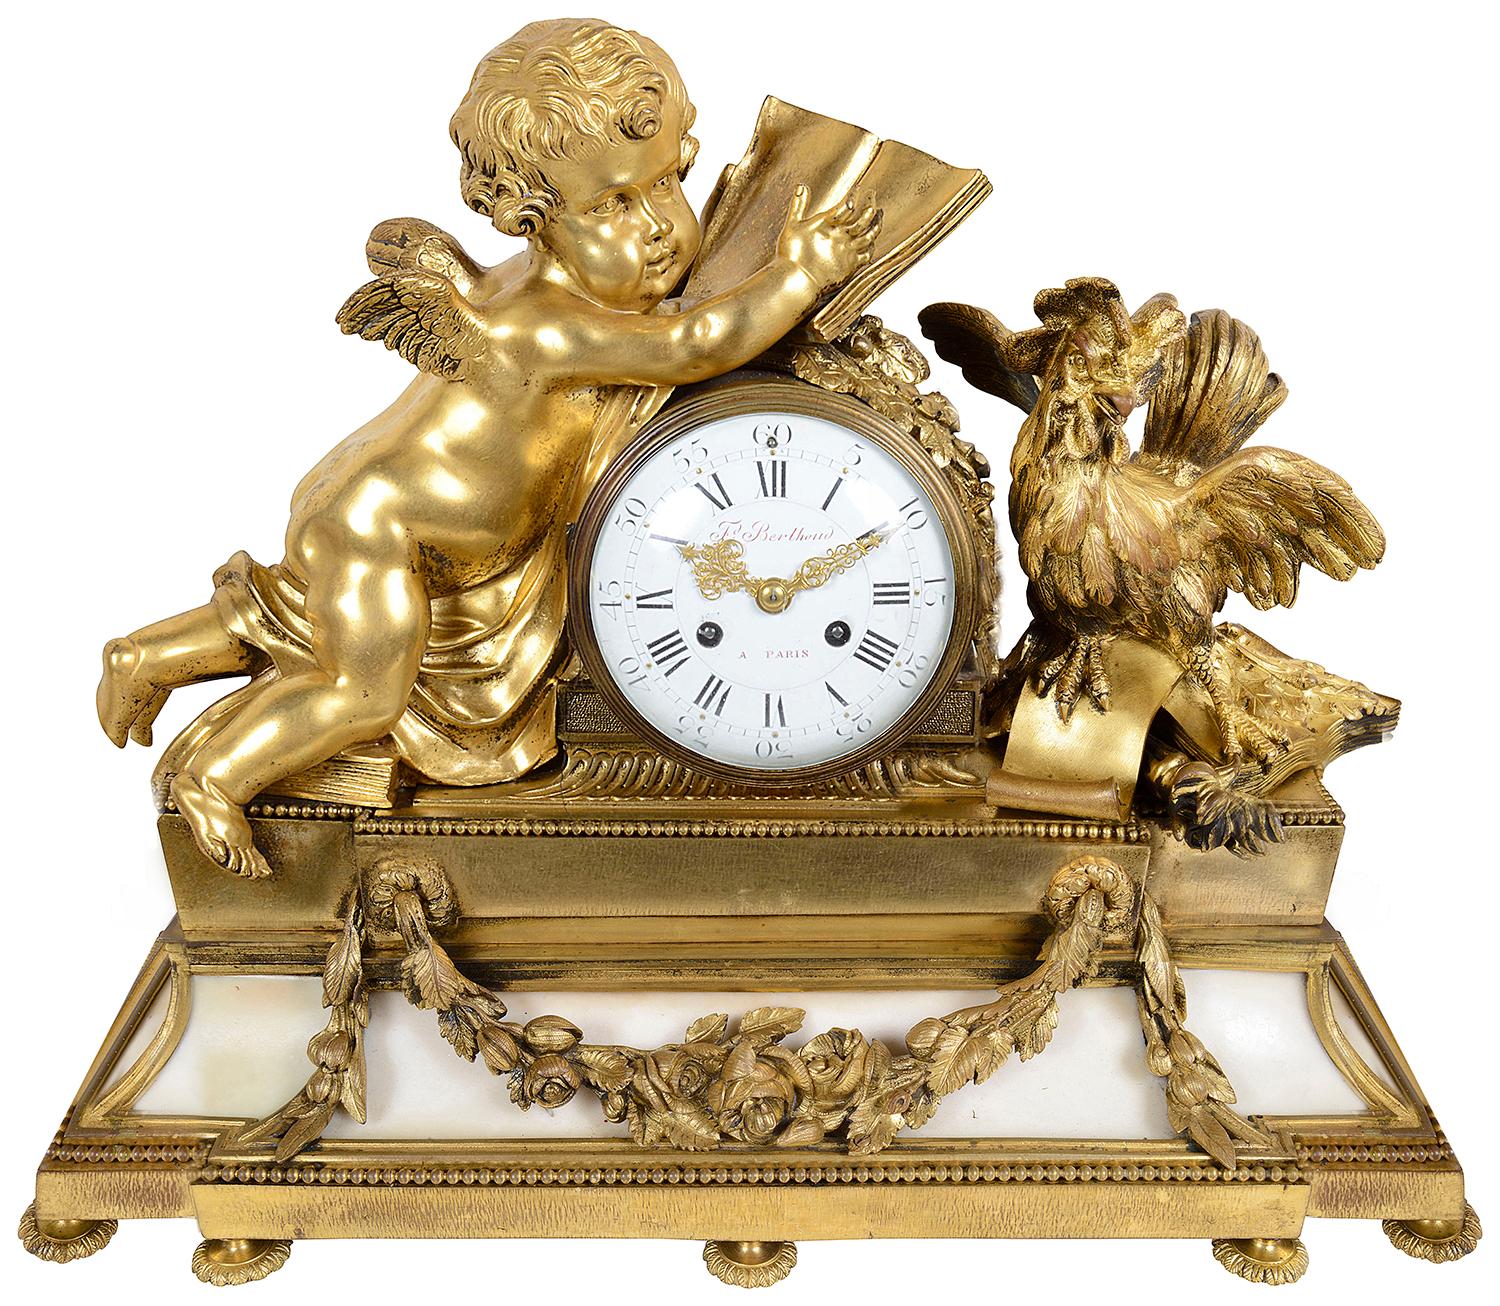 Une très impressionnante garniture d'horloge de style Louis XVI en bronze doré de bonne qualité du 19ème siècle. La paire de candélabres à cinq branches est soutenue par une paire de femmes classiques semi-vêtues, reposant sur des bases en marbre